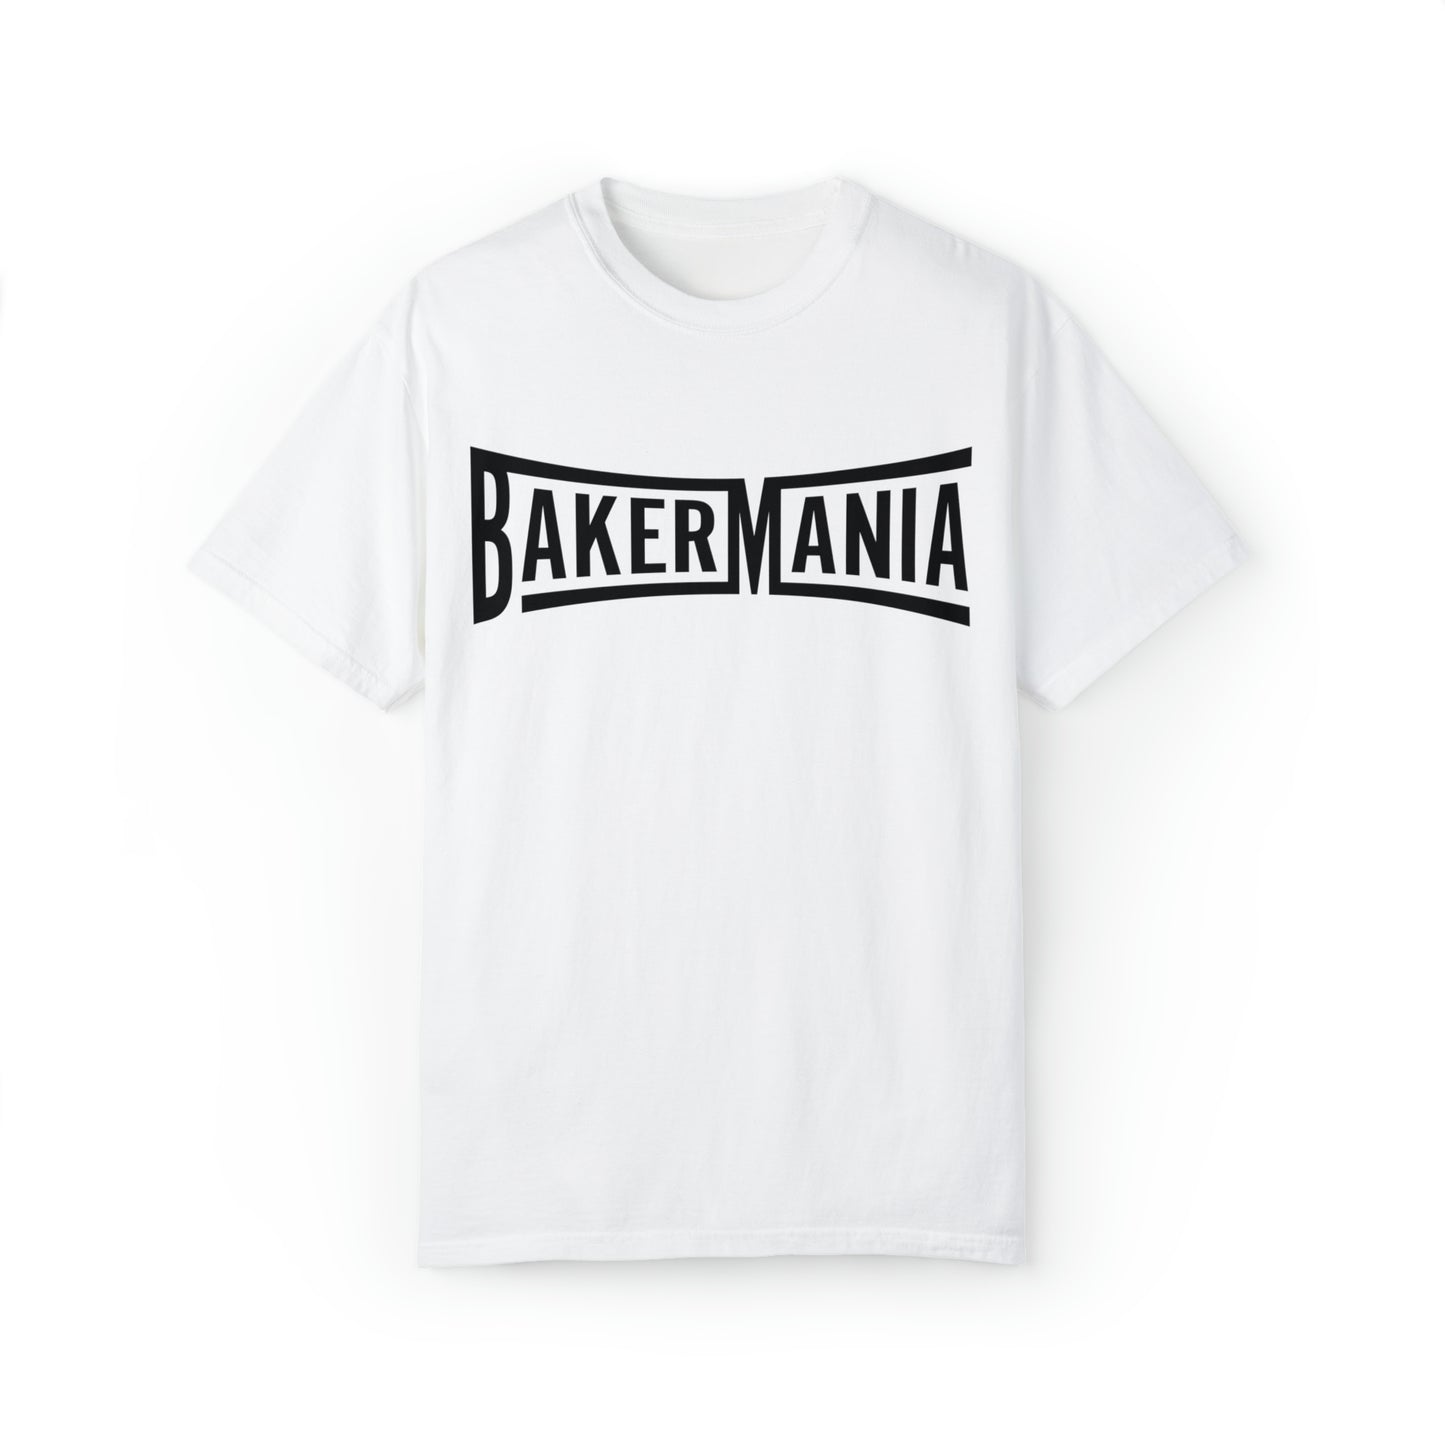 BakerMania Unisex Tee - Black/White, White/Black